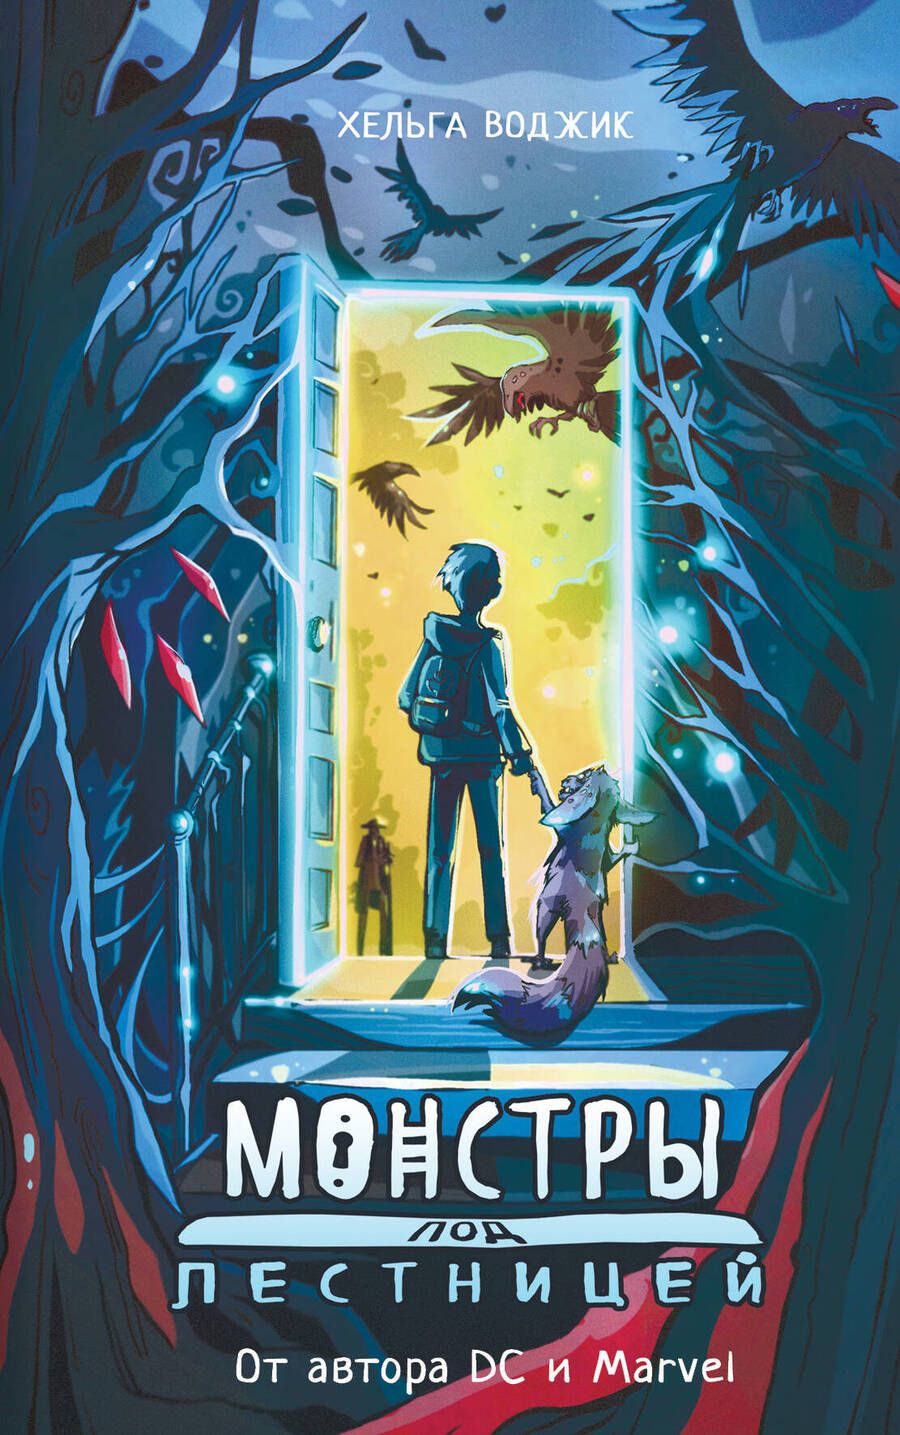 Обложка книги "Воджик: Монстры под лестницей"